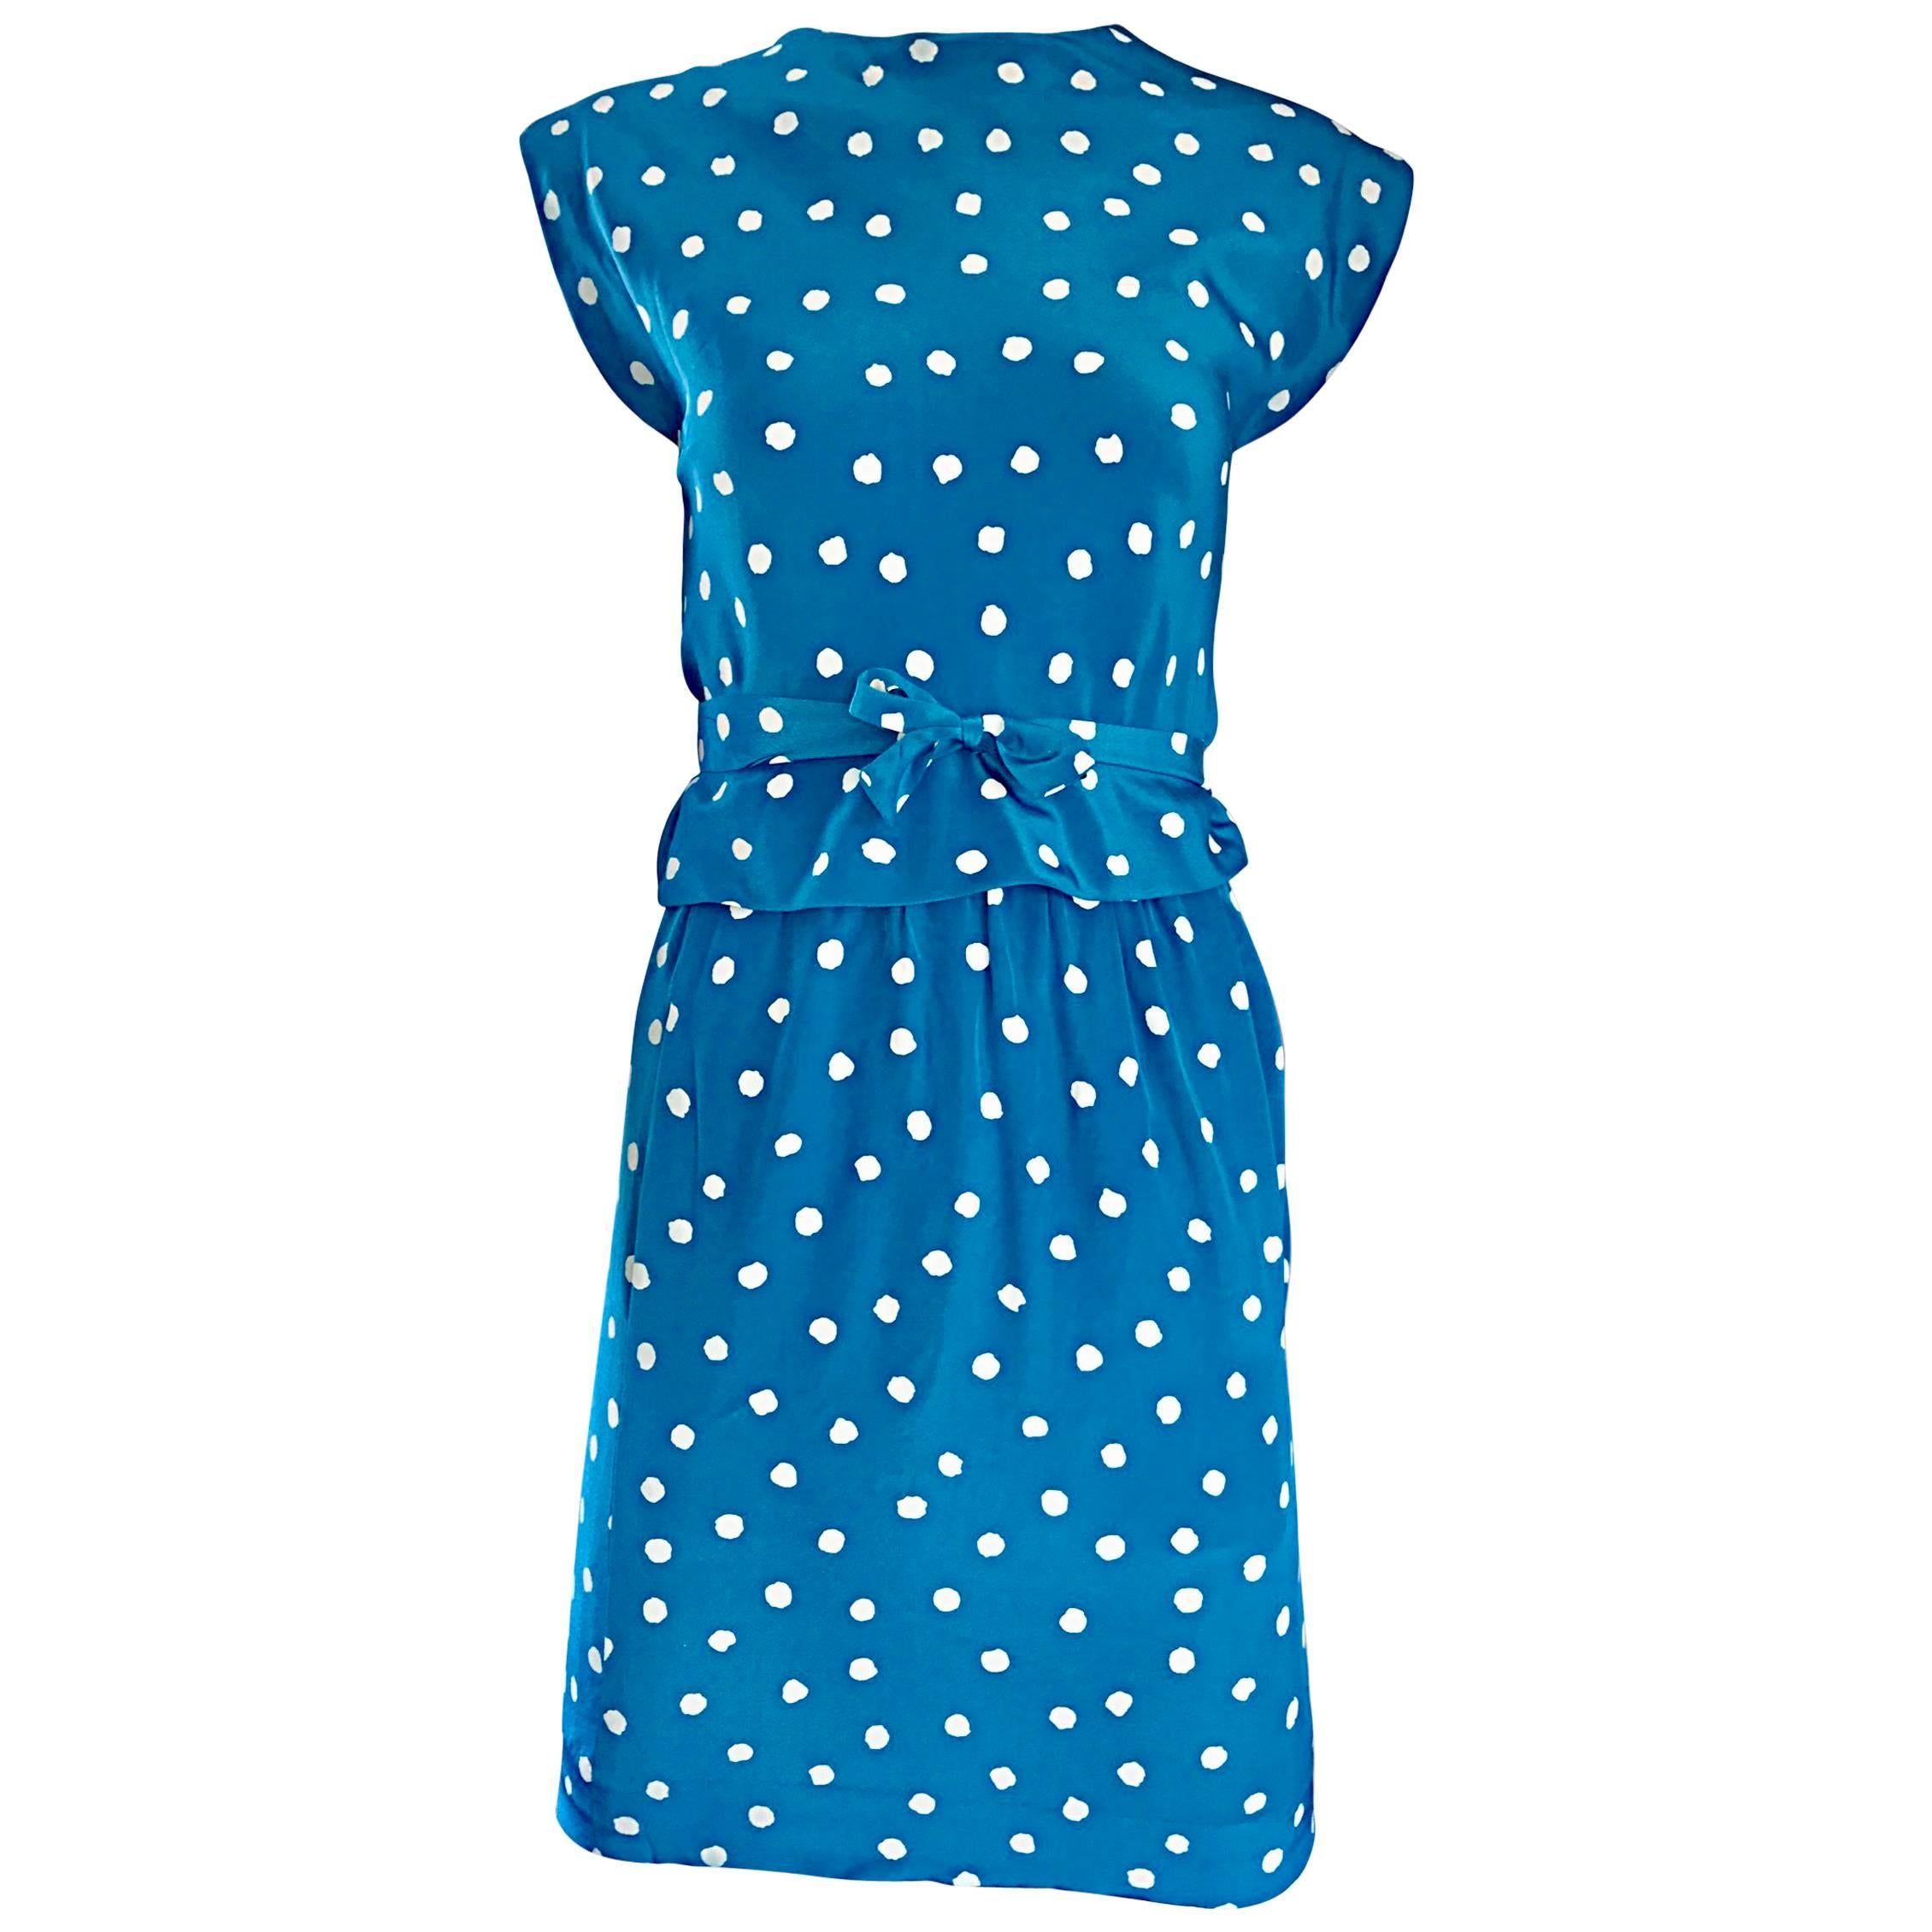 Vintage Oscar de la Renta Bright Blue and White Polka Dot Dress Ensemble Size 4